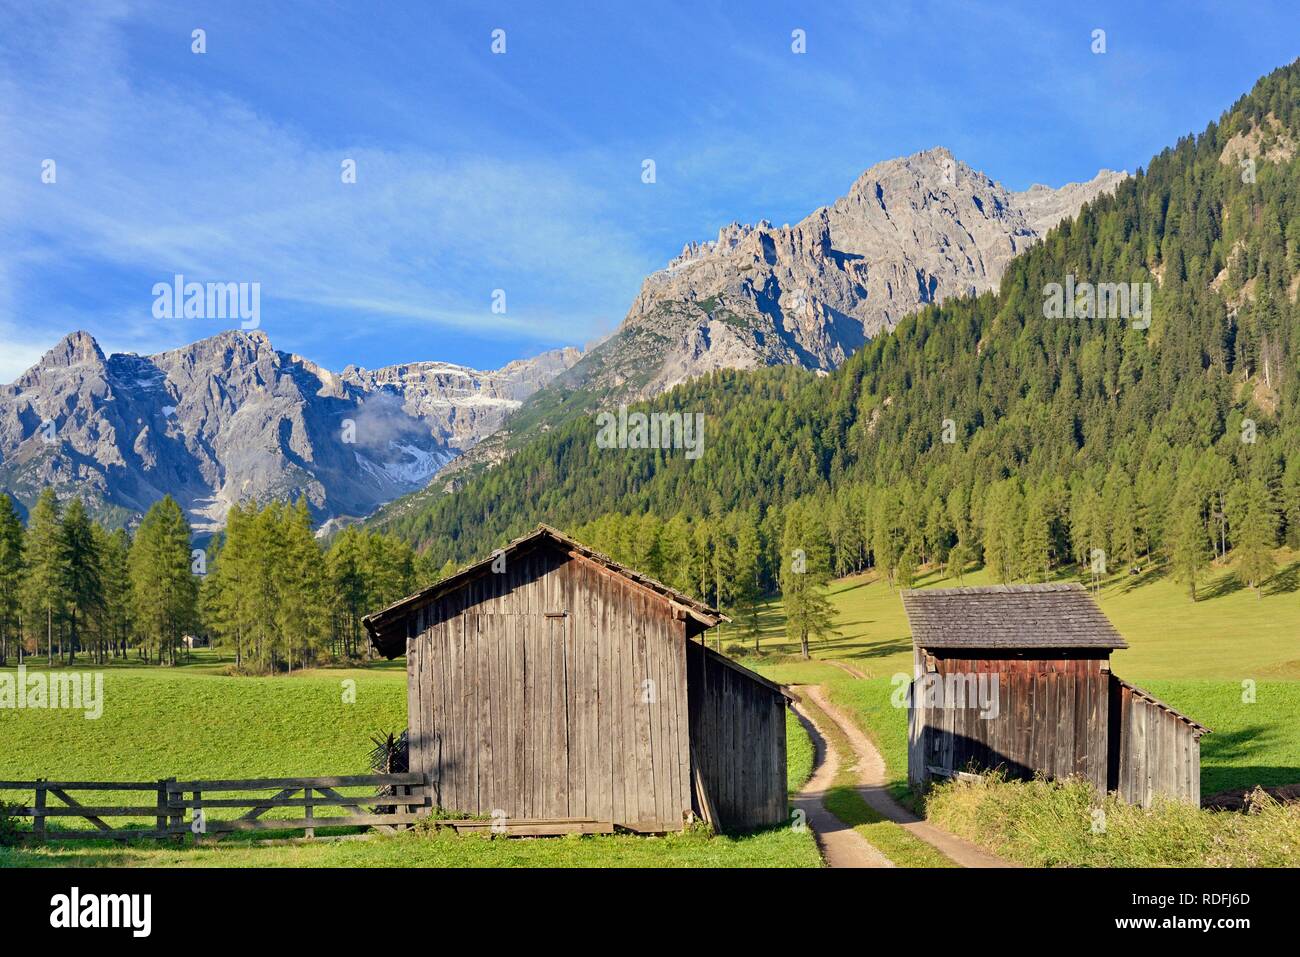 Fischleintal, haystacks on the mountain meadows, mountain forest and mountain range, Sexten Dolomites, South Tyrol, Italy Stock Photo